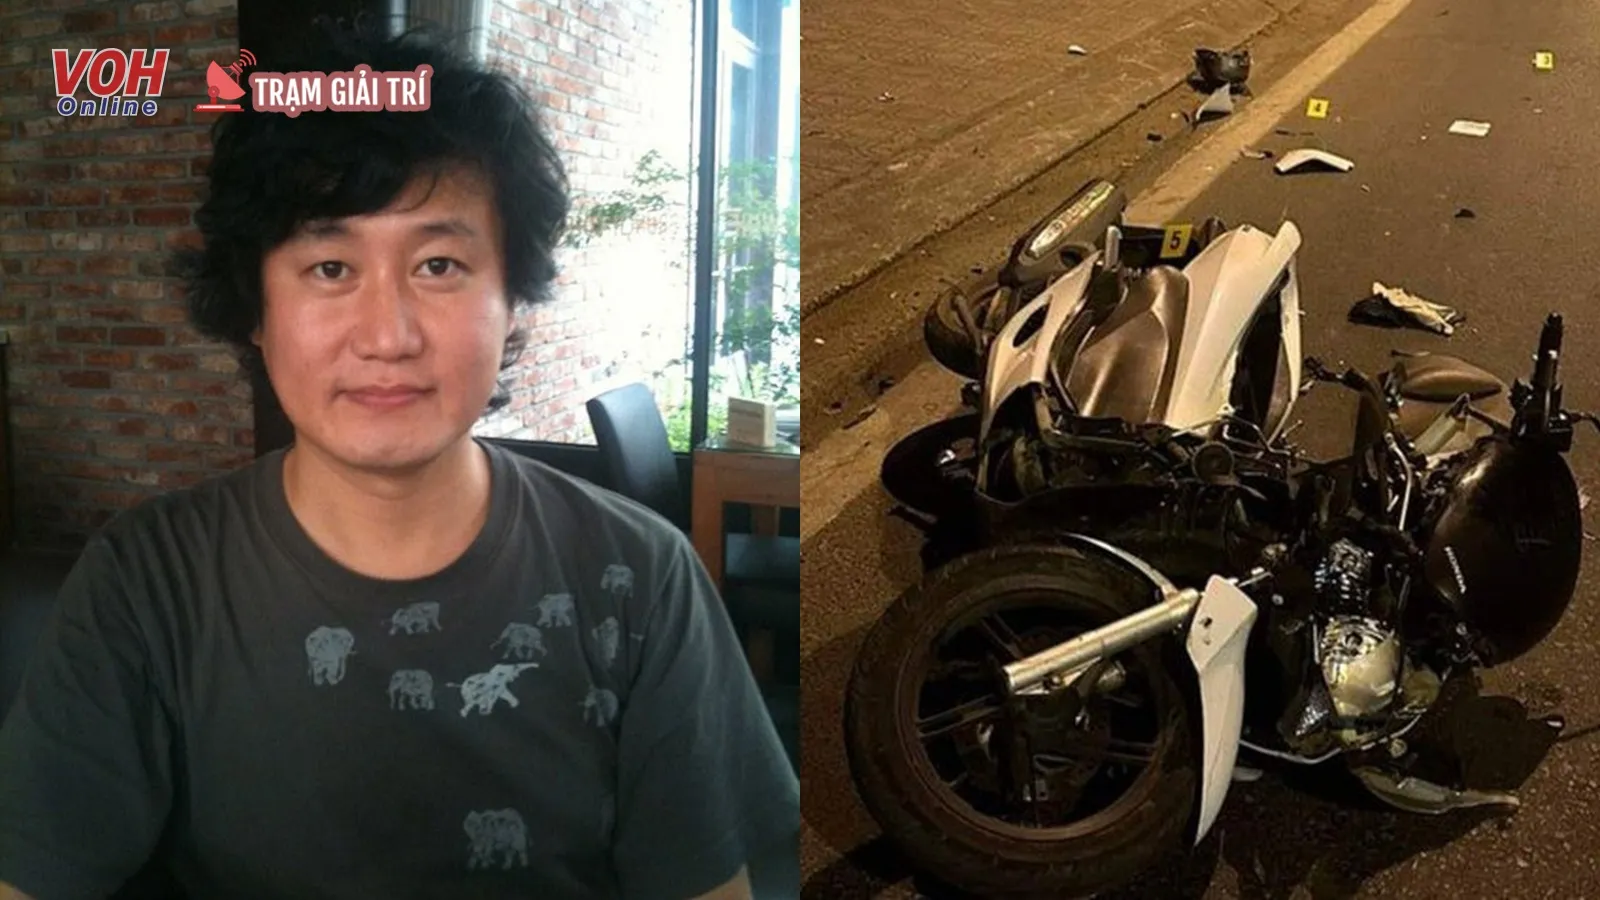 Nghệ sĩ Hàn Quốc Lim Chang Soo qua đời vì tai nạn xe máy ở Đà Lạt